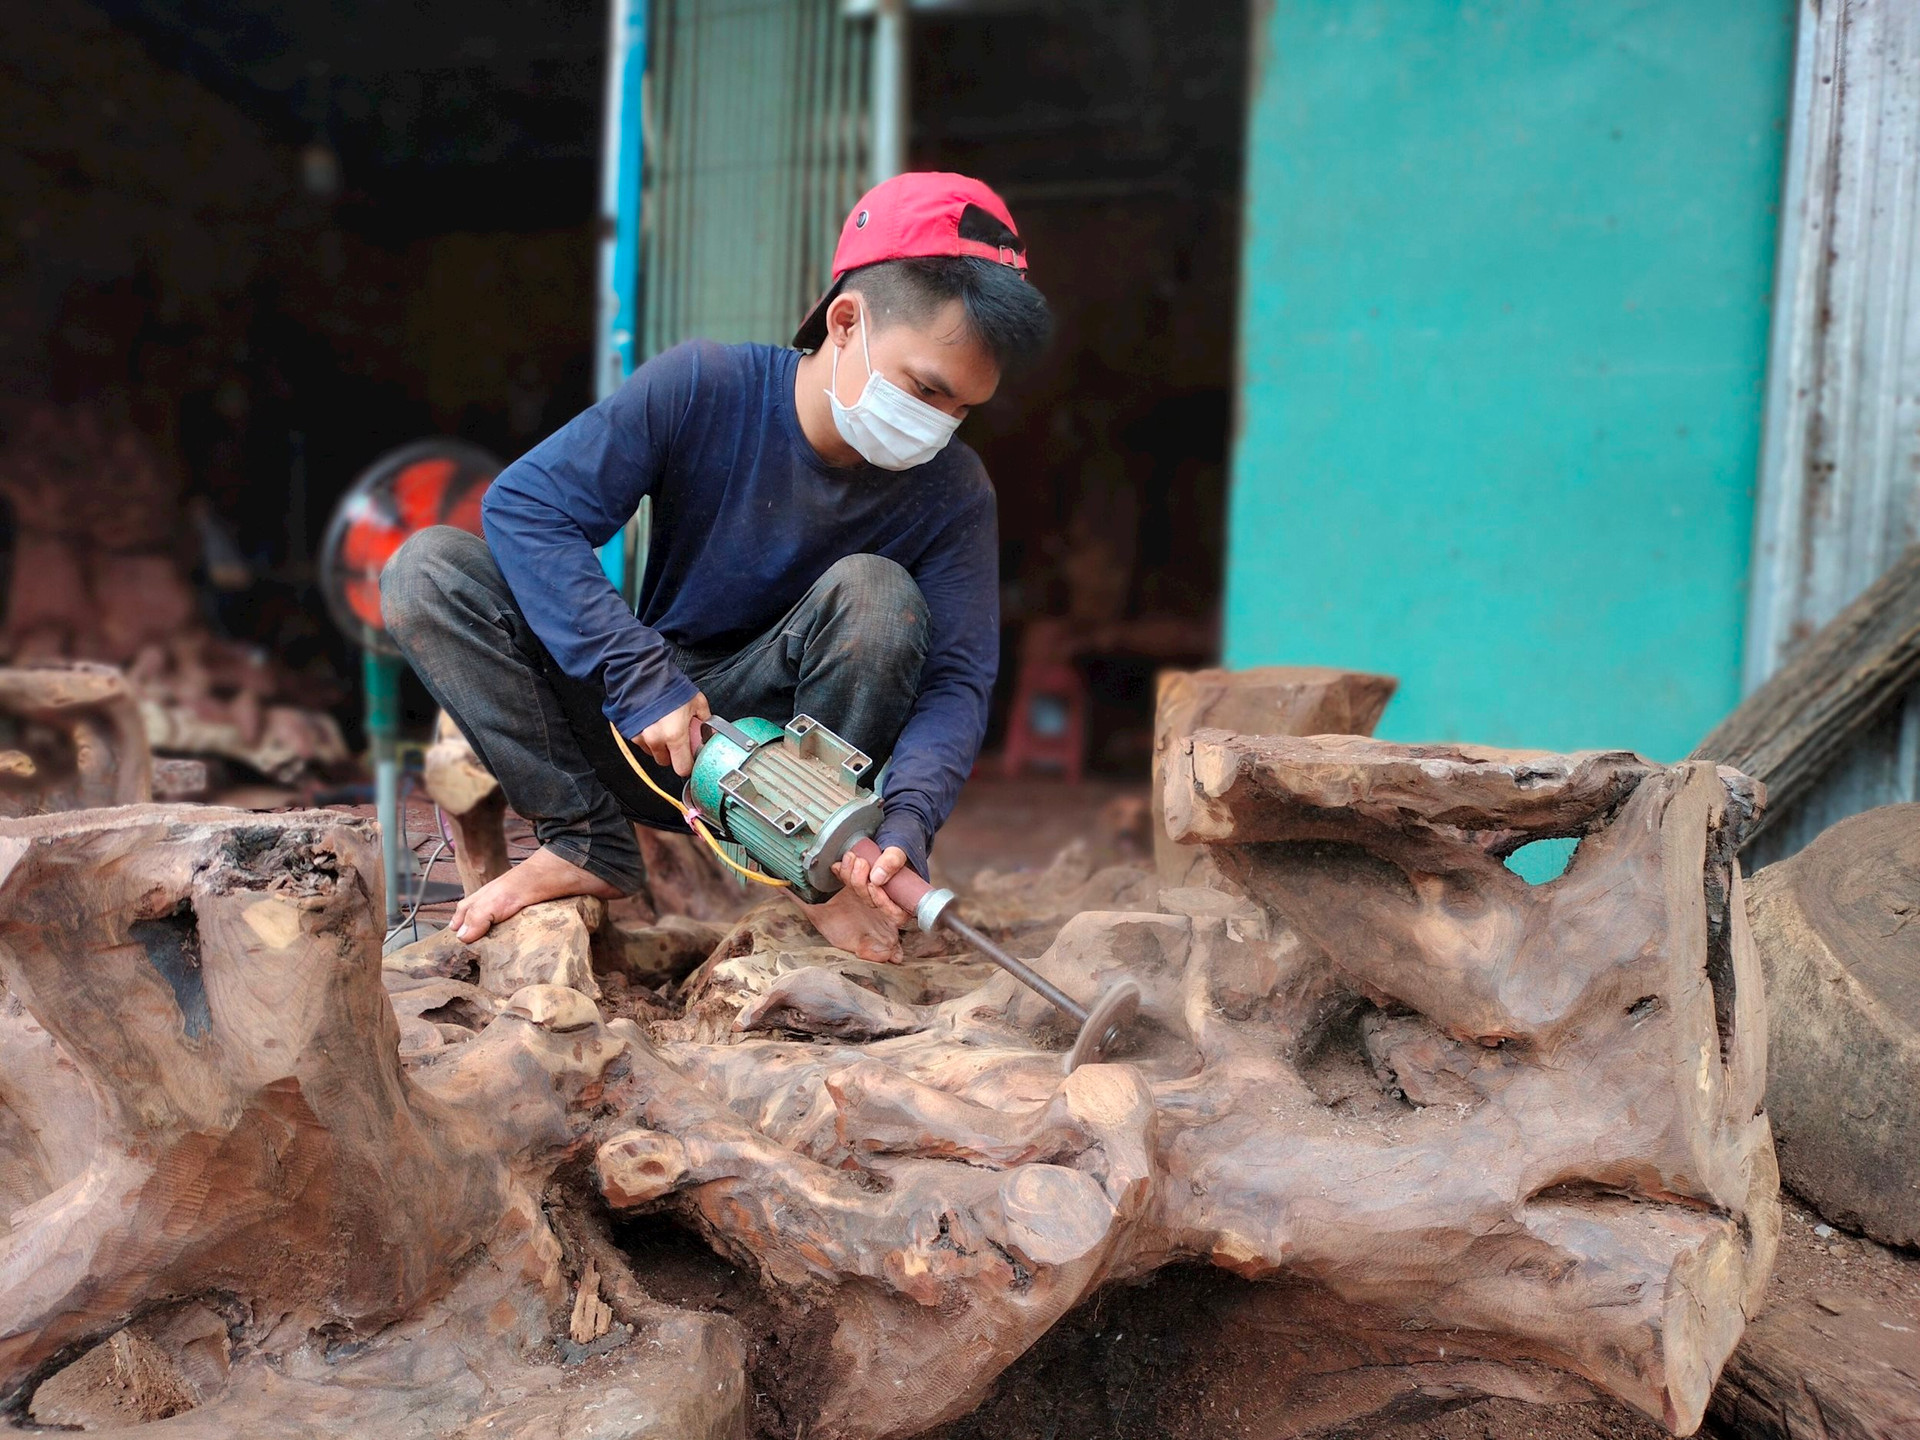 Thợ thủ công của một cơ sở sản xuất đồ gỗ mỹ nghệ cho một số ít người có nhu cầu